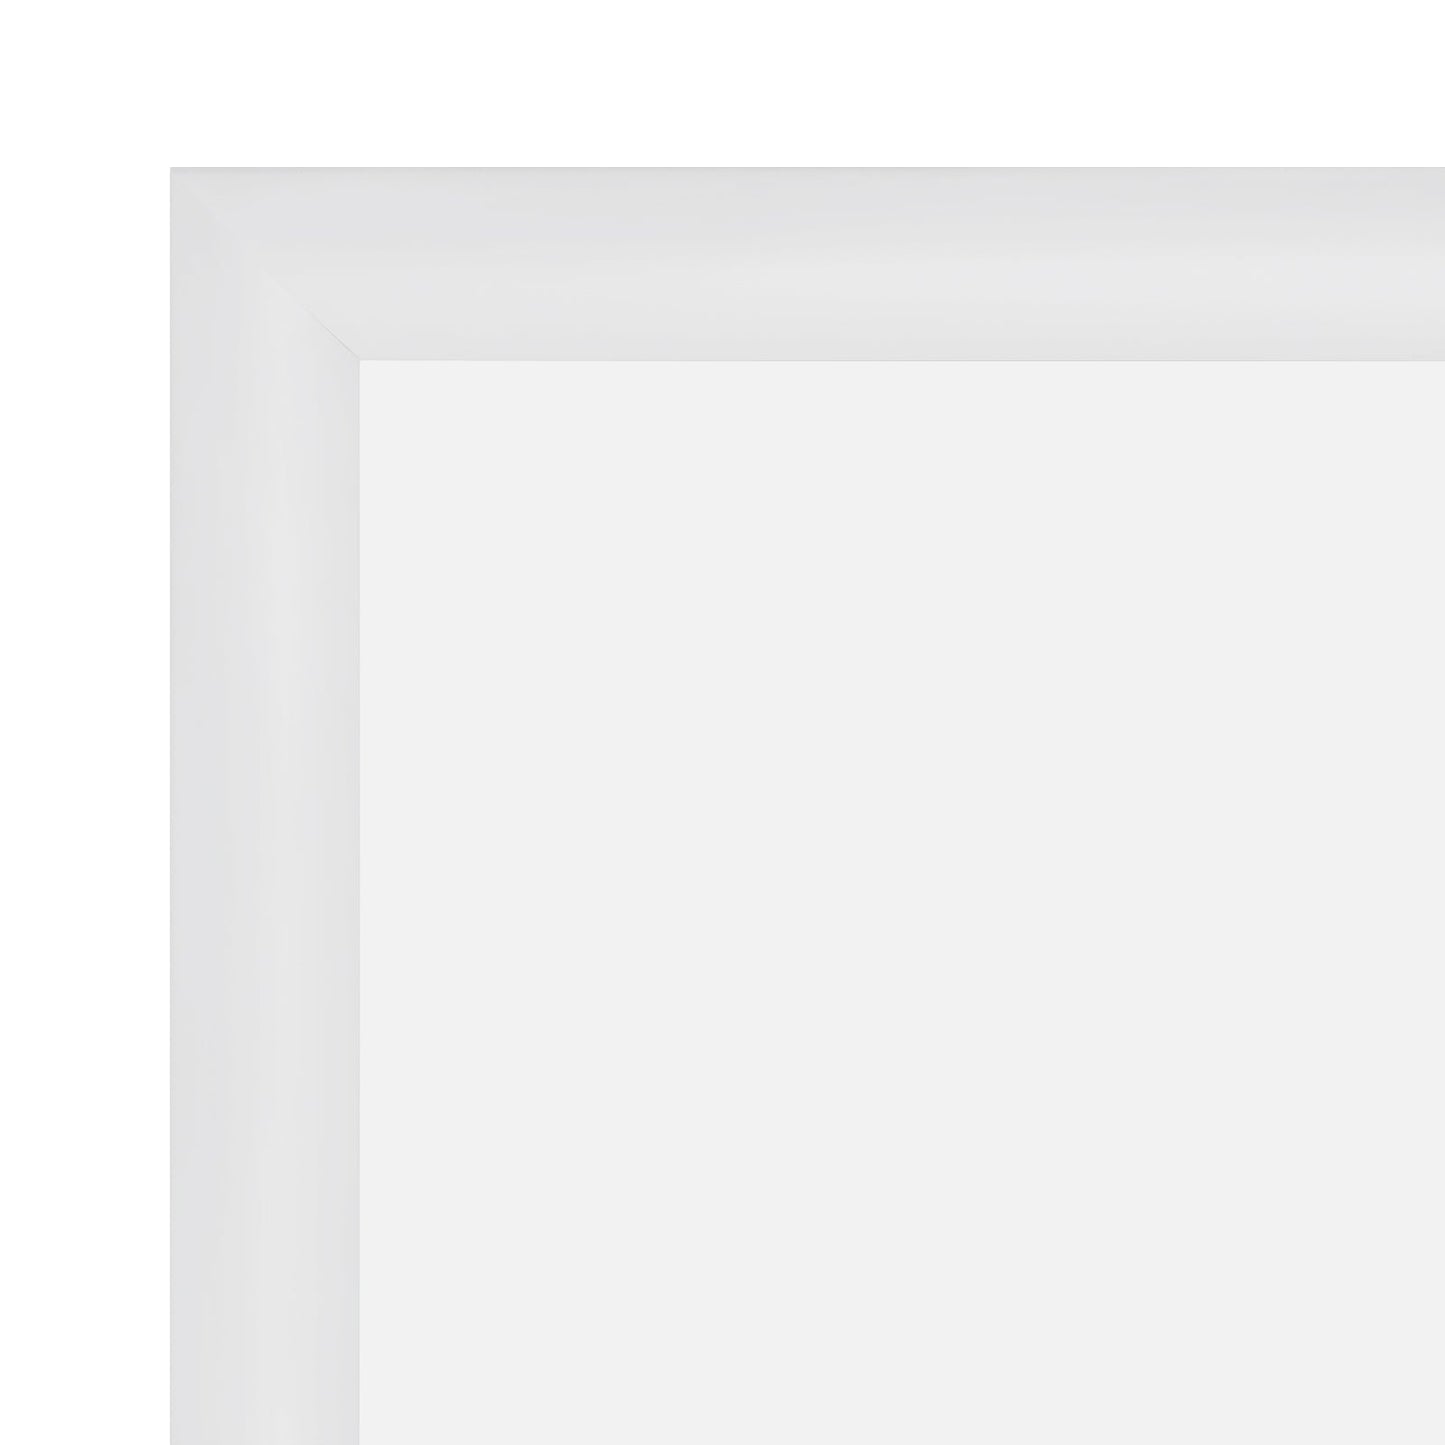 13.5x40 White SnapeZo® Snap Frame - 1.2" Profile